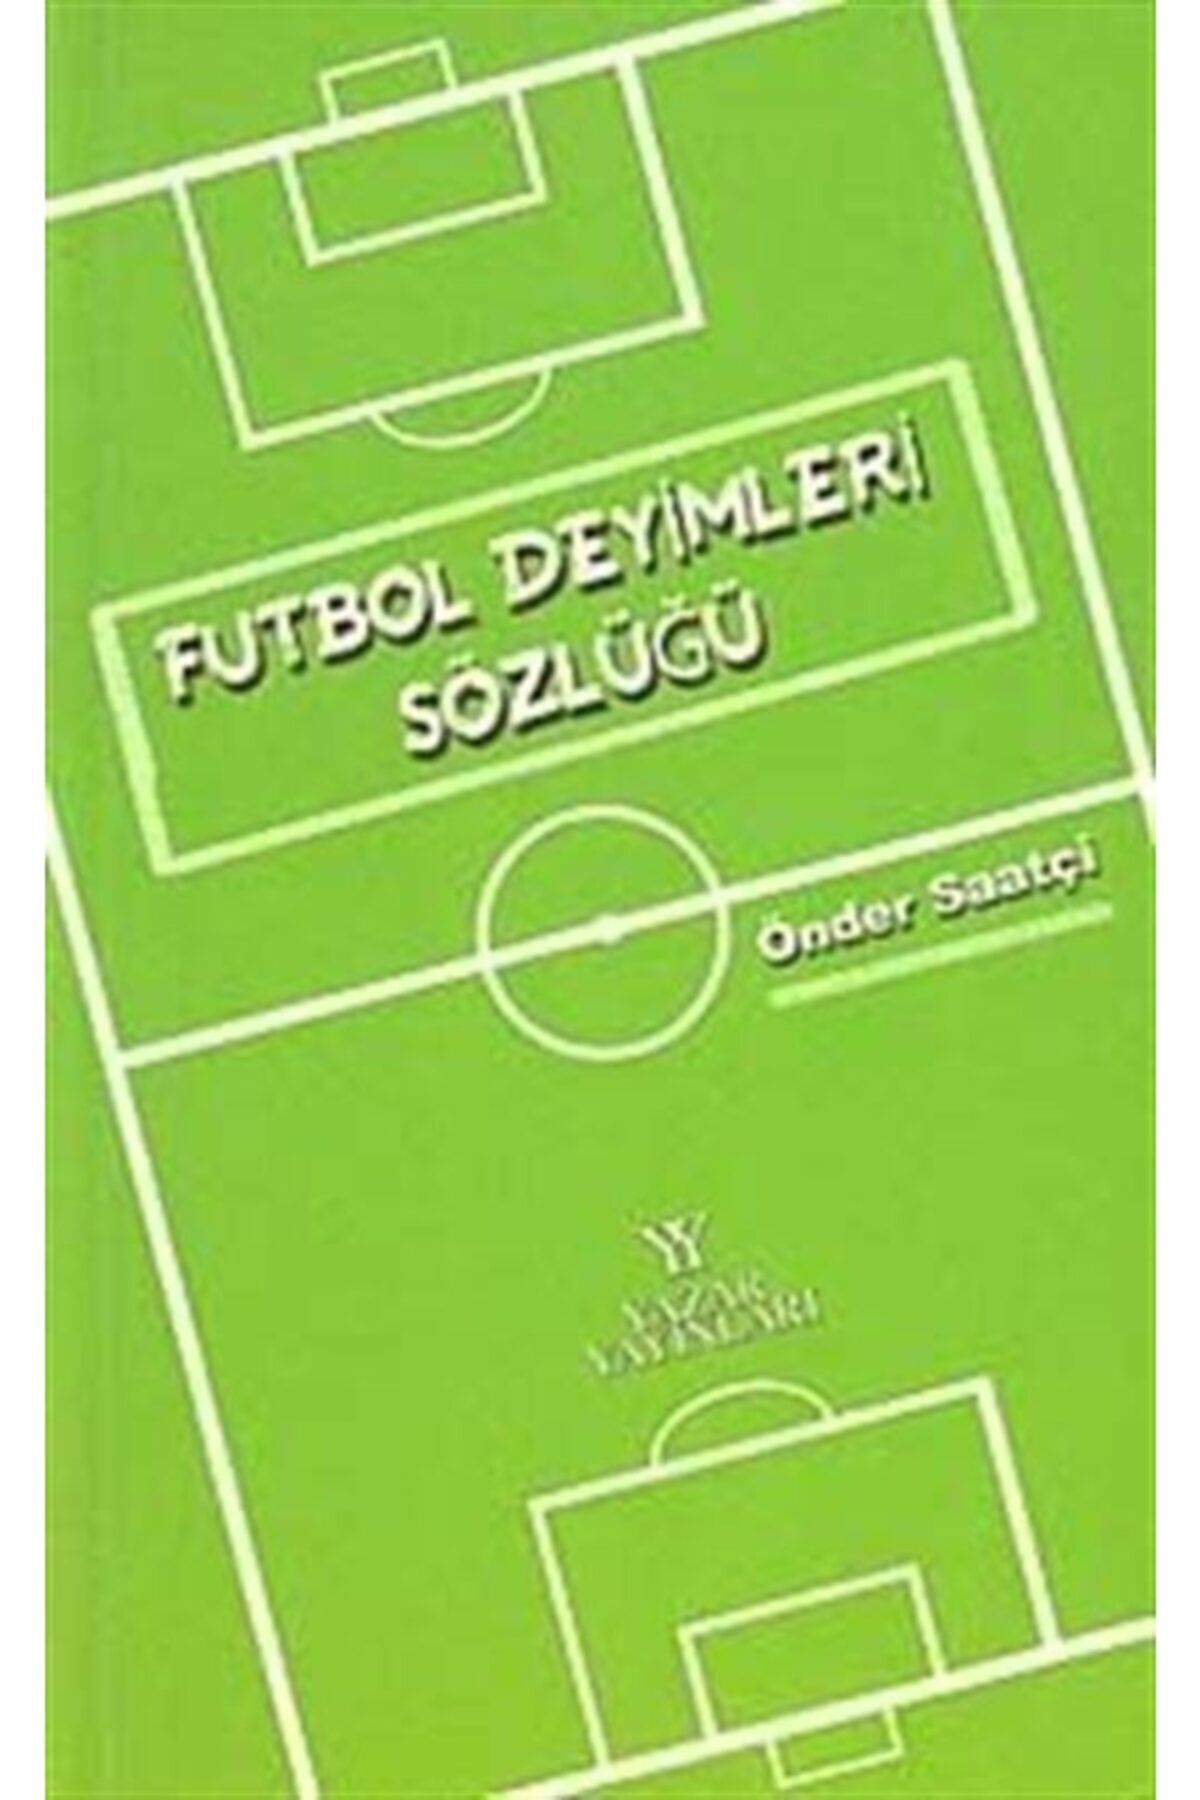 Yazar Yayınları Futbol Deyimleri Sözlüğü - Önder Saatçi